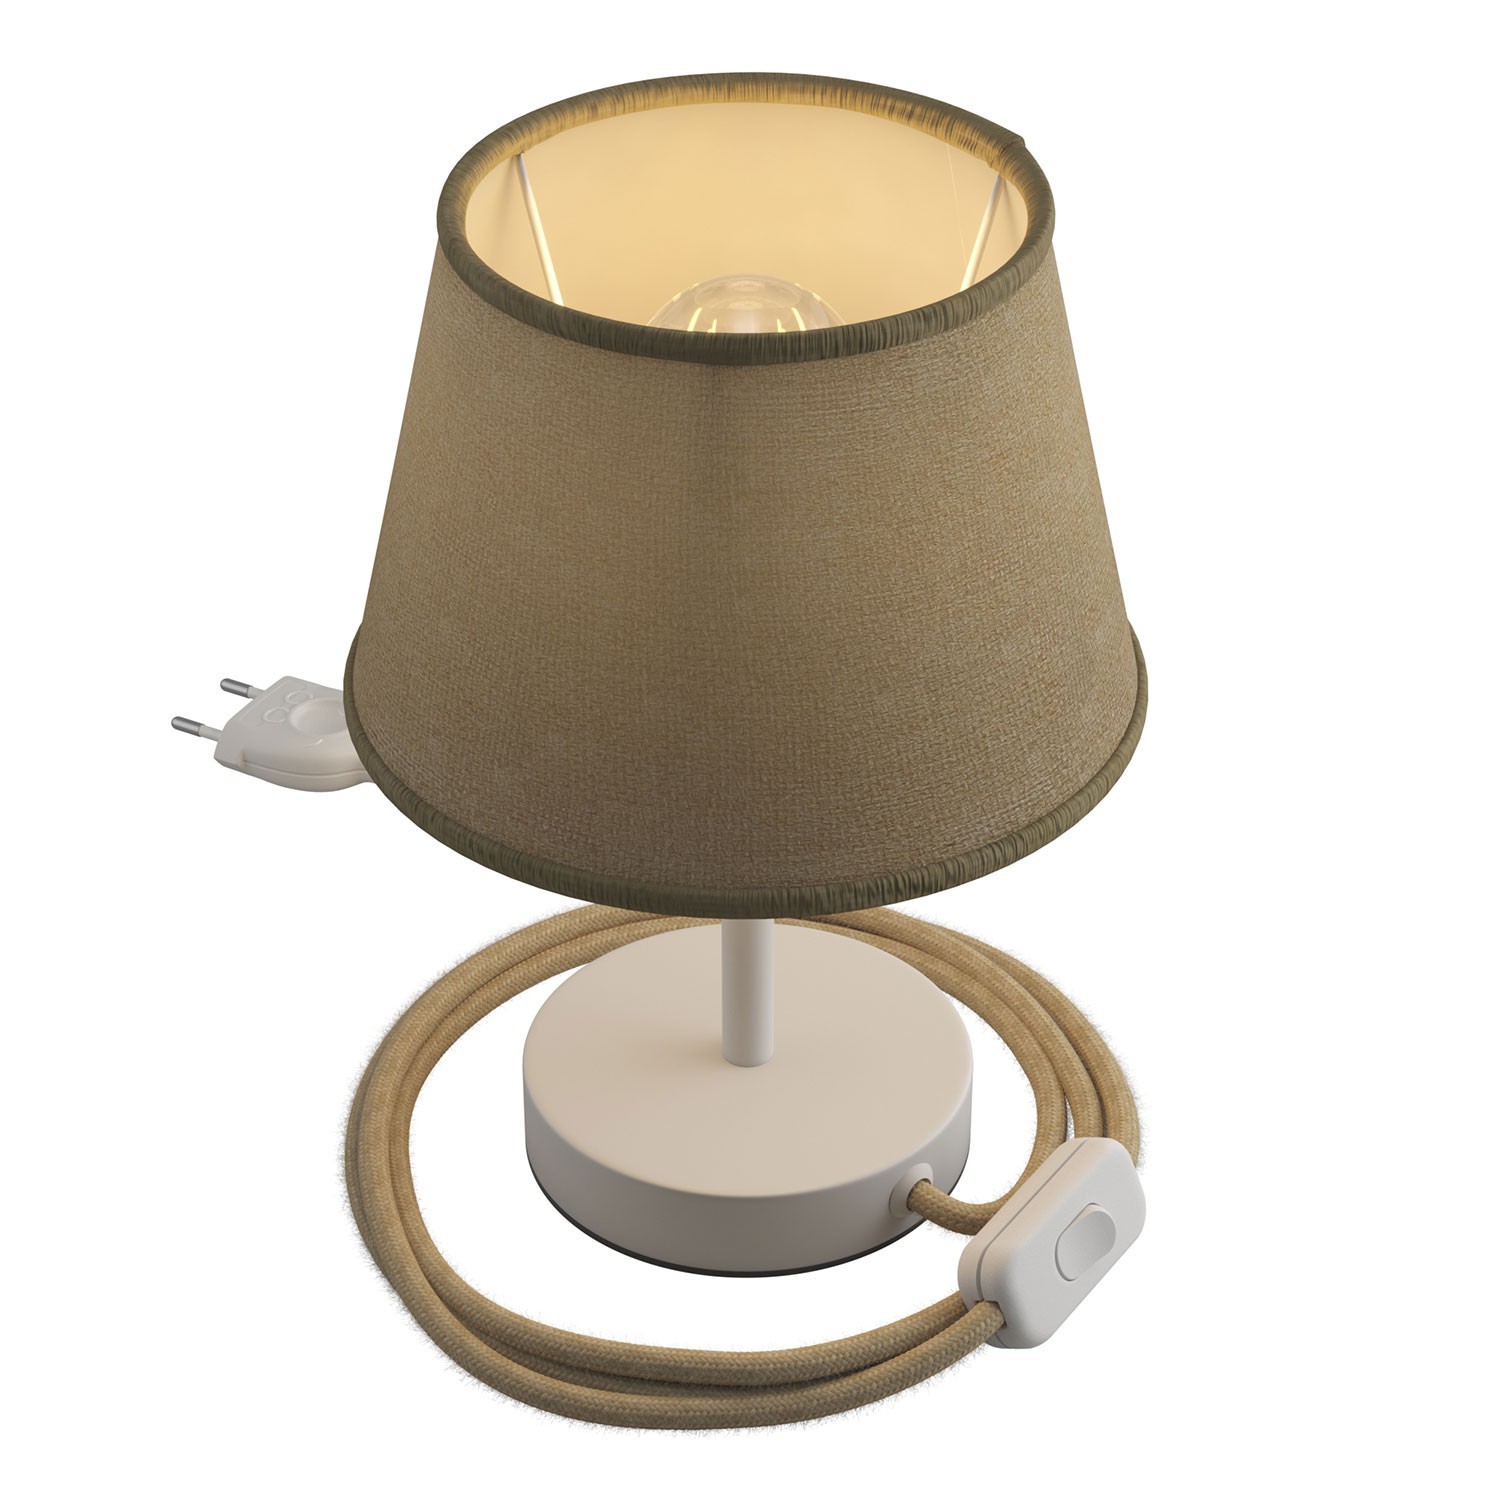 Alzaluce, lámpara de mesa tradicional con pantalla Imperio